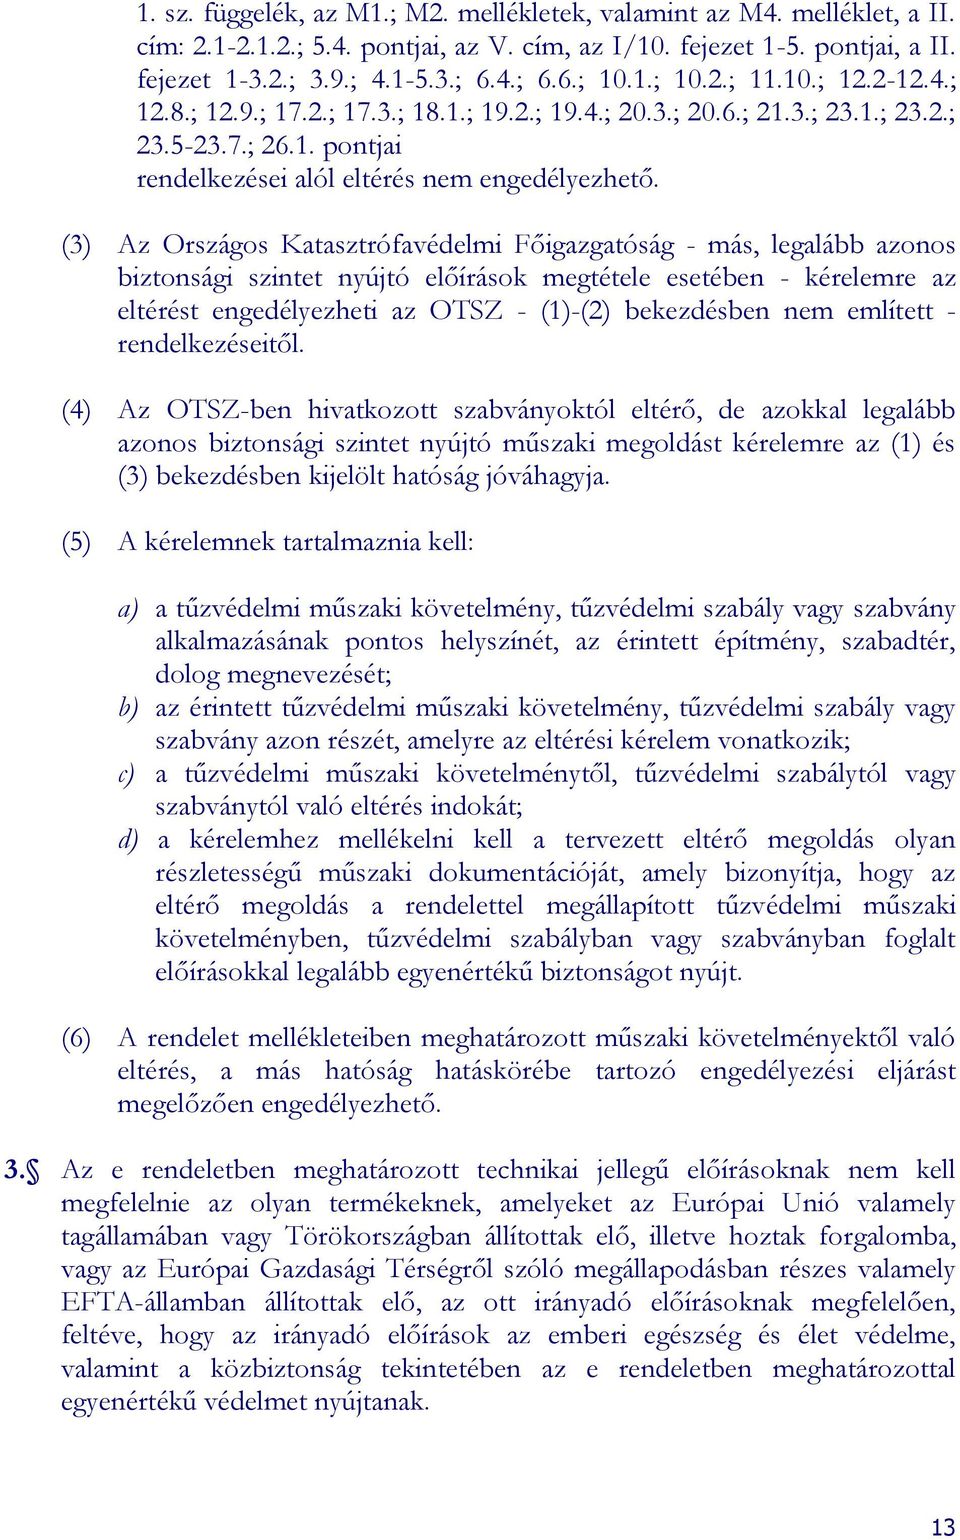 (3) Az Országos Katasztrófavédelmi Főigazgatóság - más, legalább azonos biztonsági szintet nyújtó előírások megtétele esetében - kérelemre az eltérést engedélyezheti az OTSZ - (1)-(2) bekezdésben nem